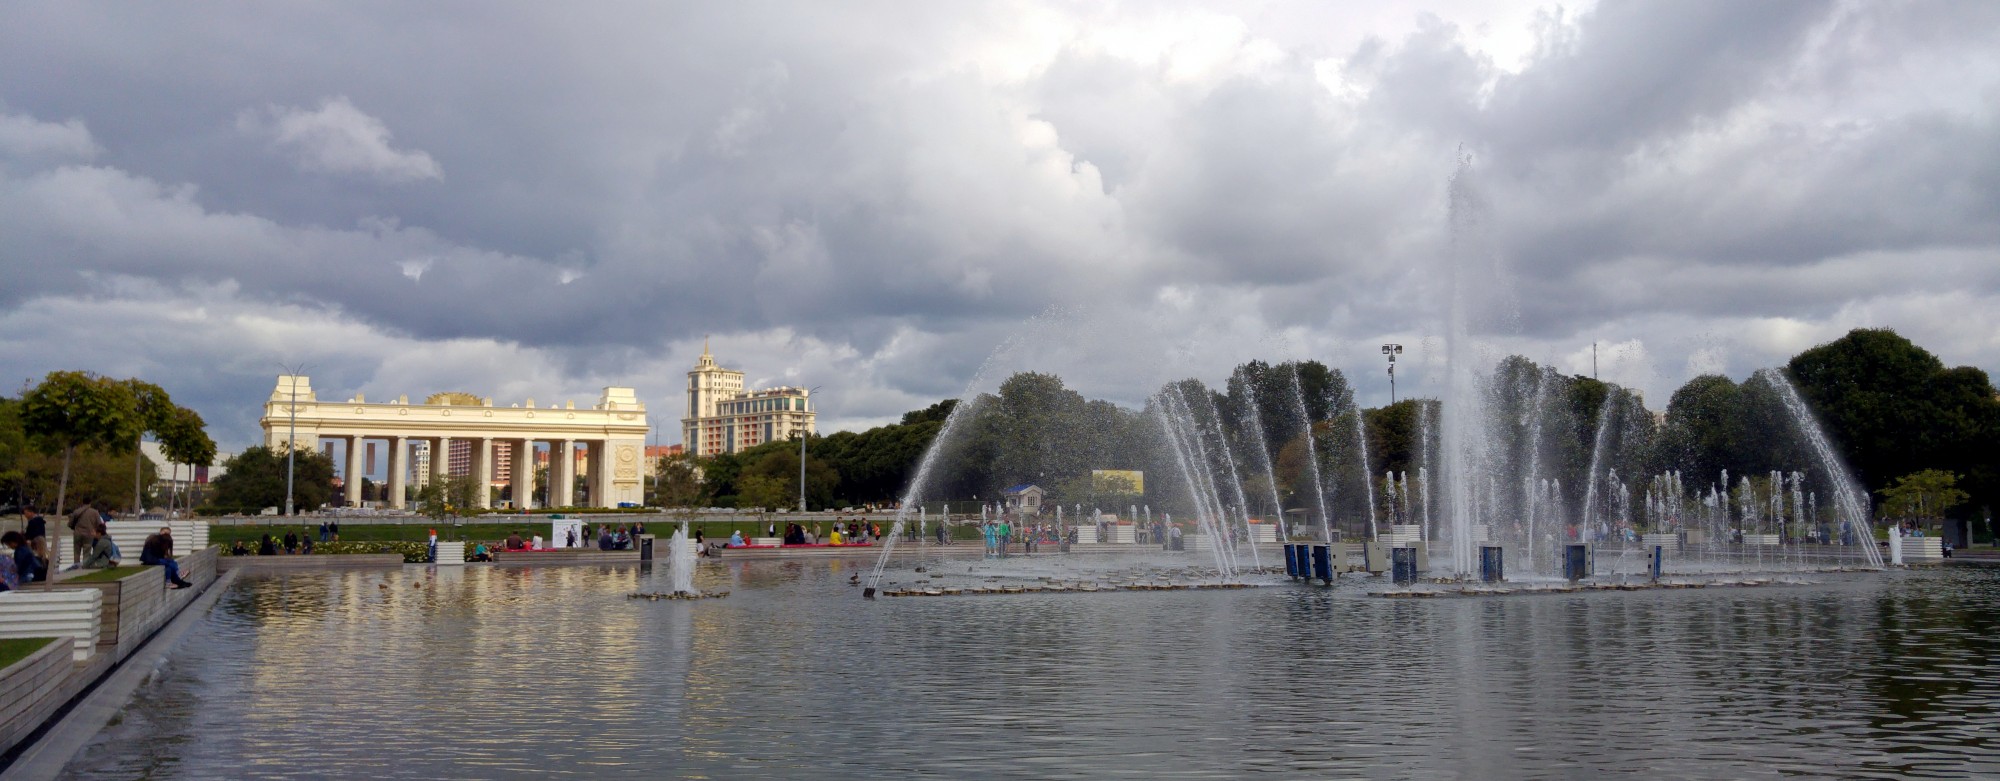 پارک گورکی مسکو